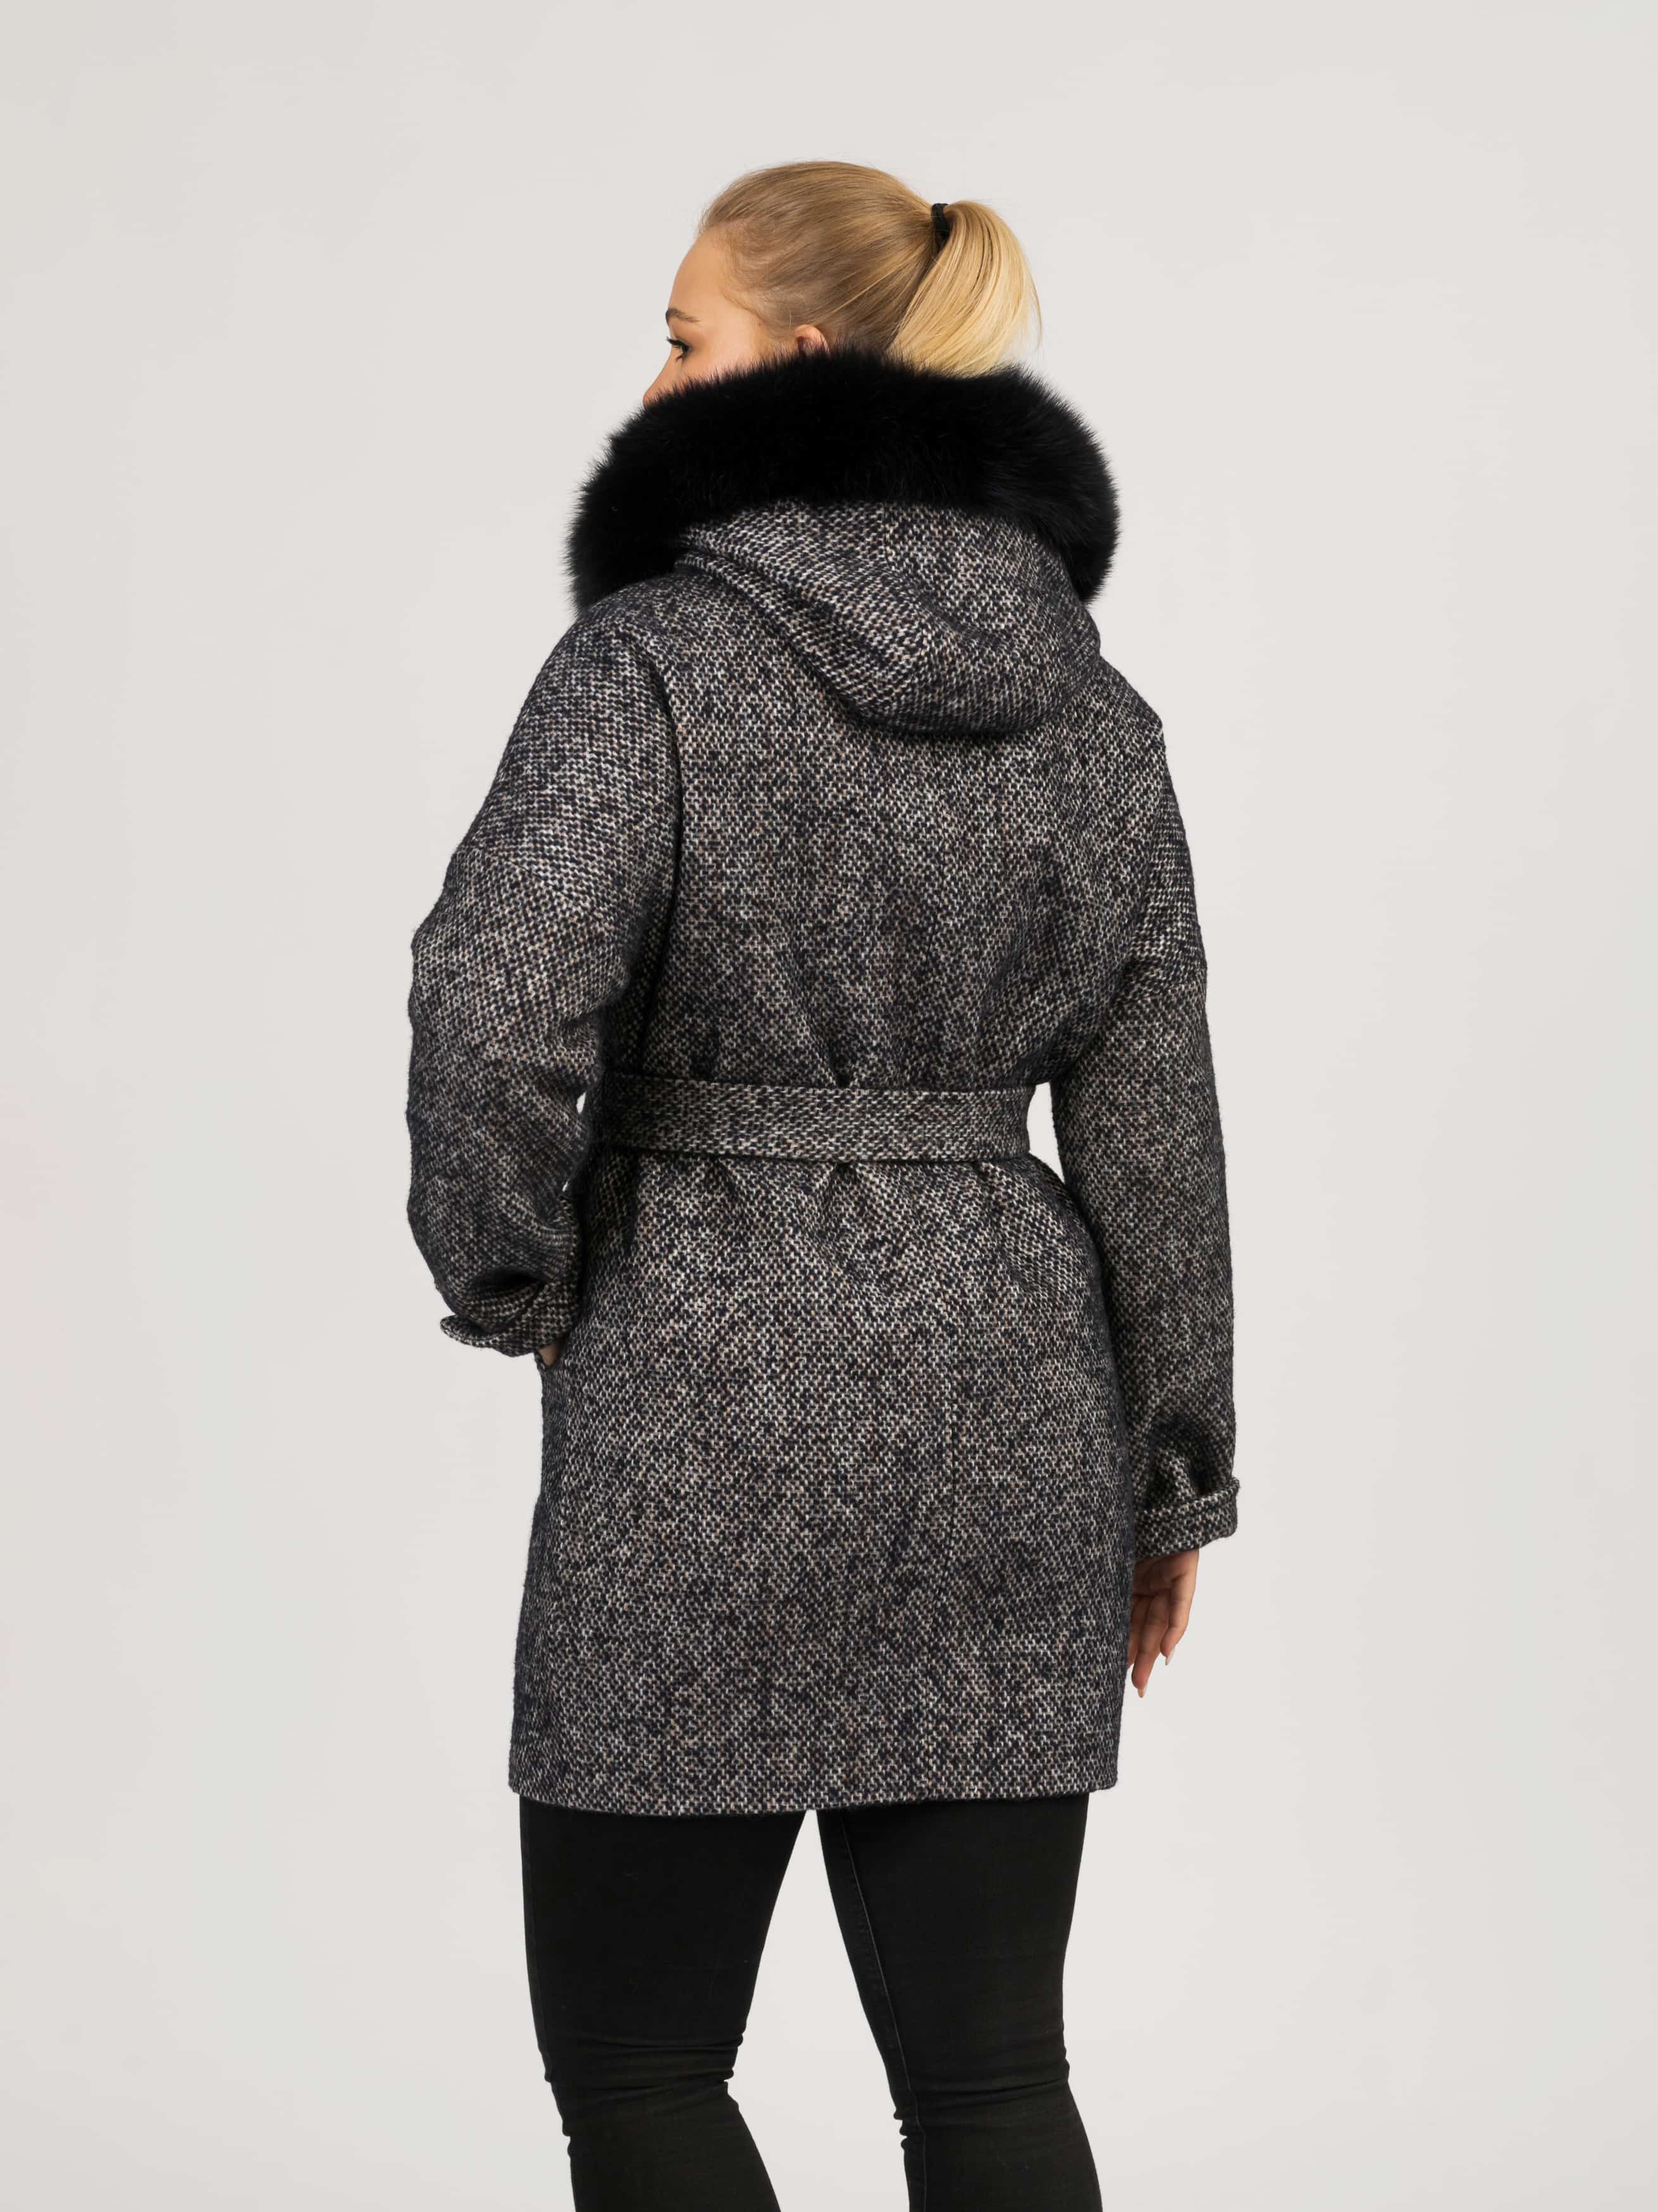 Пальто женское с капюшоном и отделкой из меха песца 52202